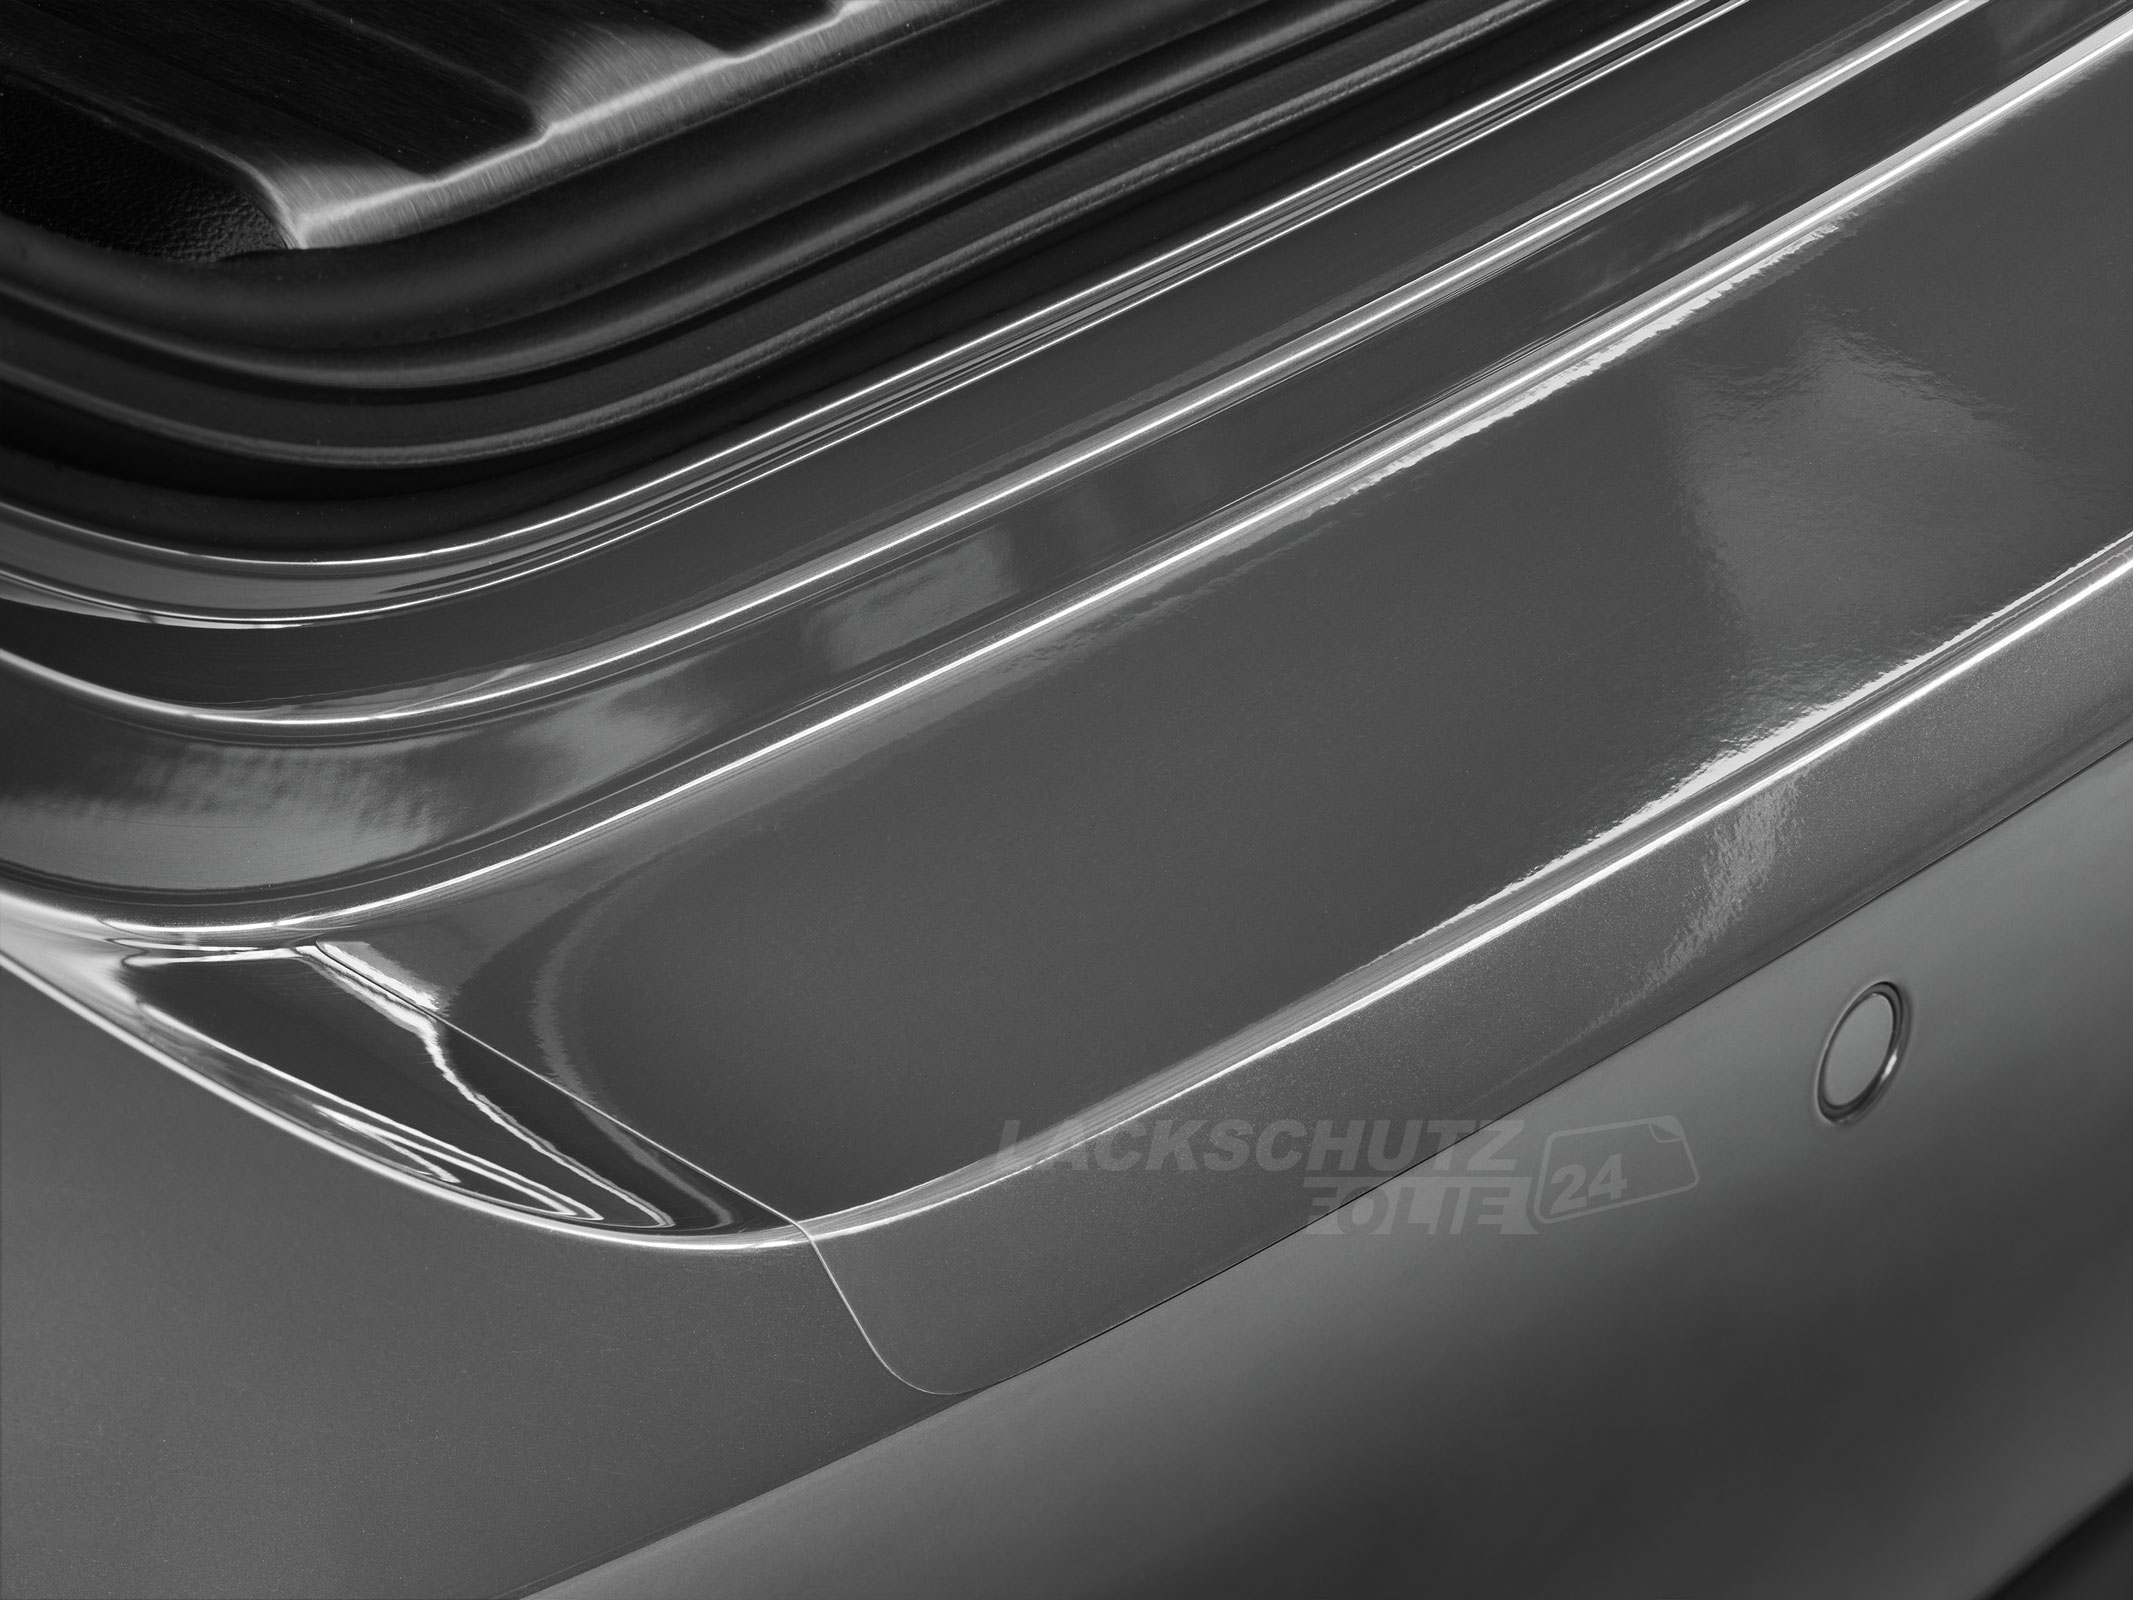 Ladekantenschutzfolie - Transparent Glatt Hochglänzend für Seat Ibiza Typ 6J + 6P, Facelift, BJ 2008-2017